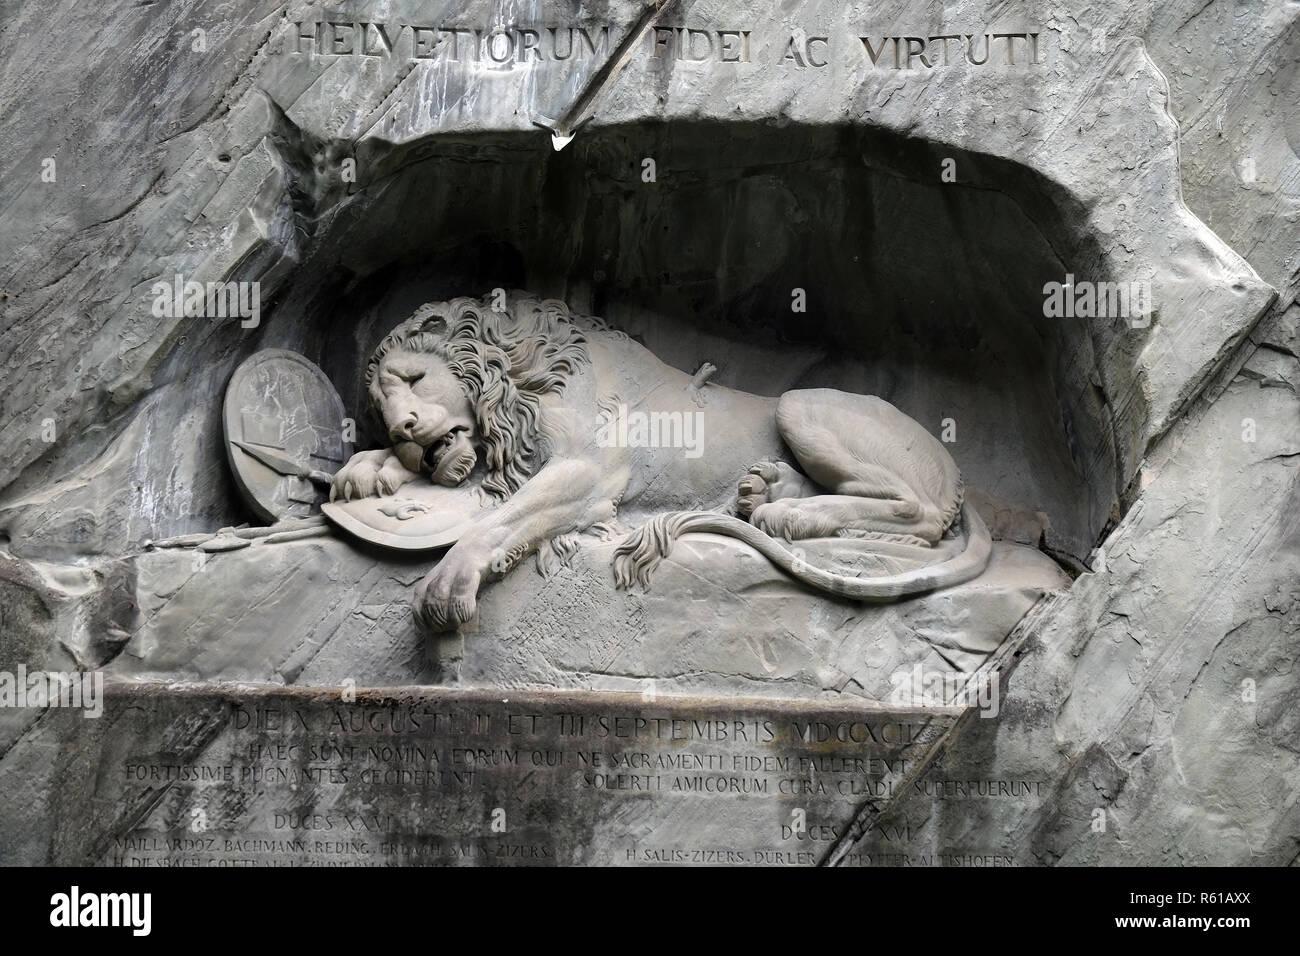 Das Löwendenkmal oder der Löwe von Luzern, entworfen von Bertel Thorvaldsen  ist ein Felsen Entlastung in Luzern, Schweiz Stockfotografie - Alamy